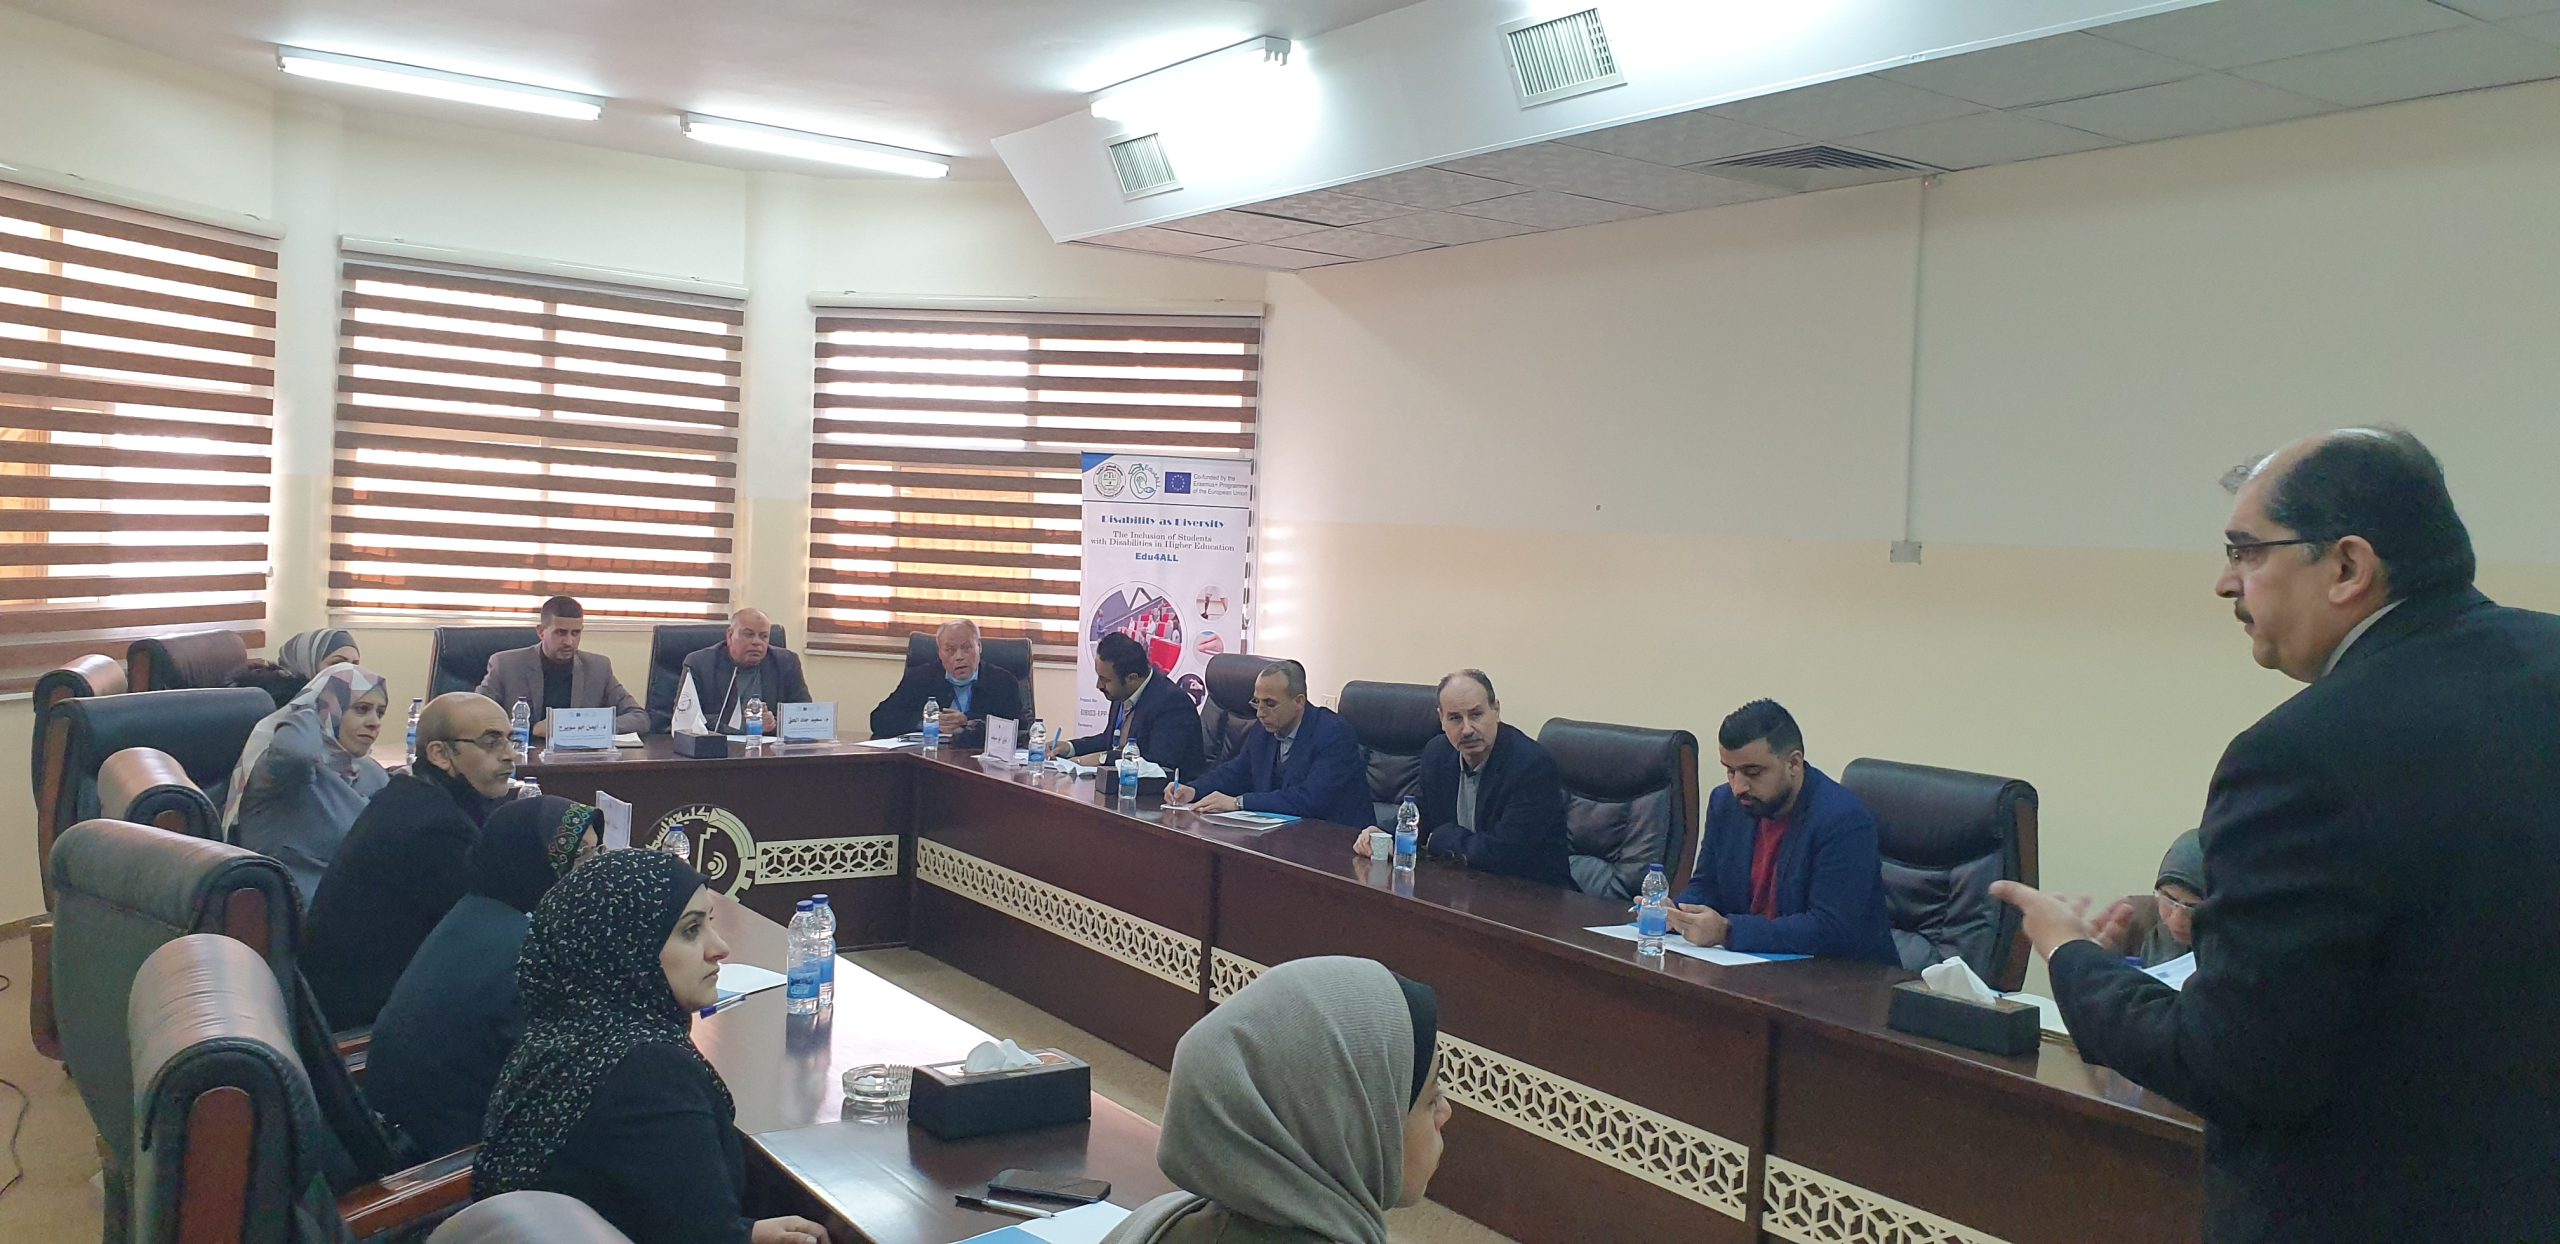 PTC organizes a workshop Dr. Mohamed Elnaggar